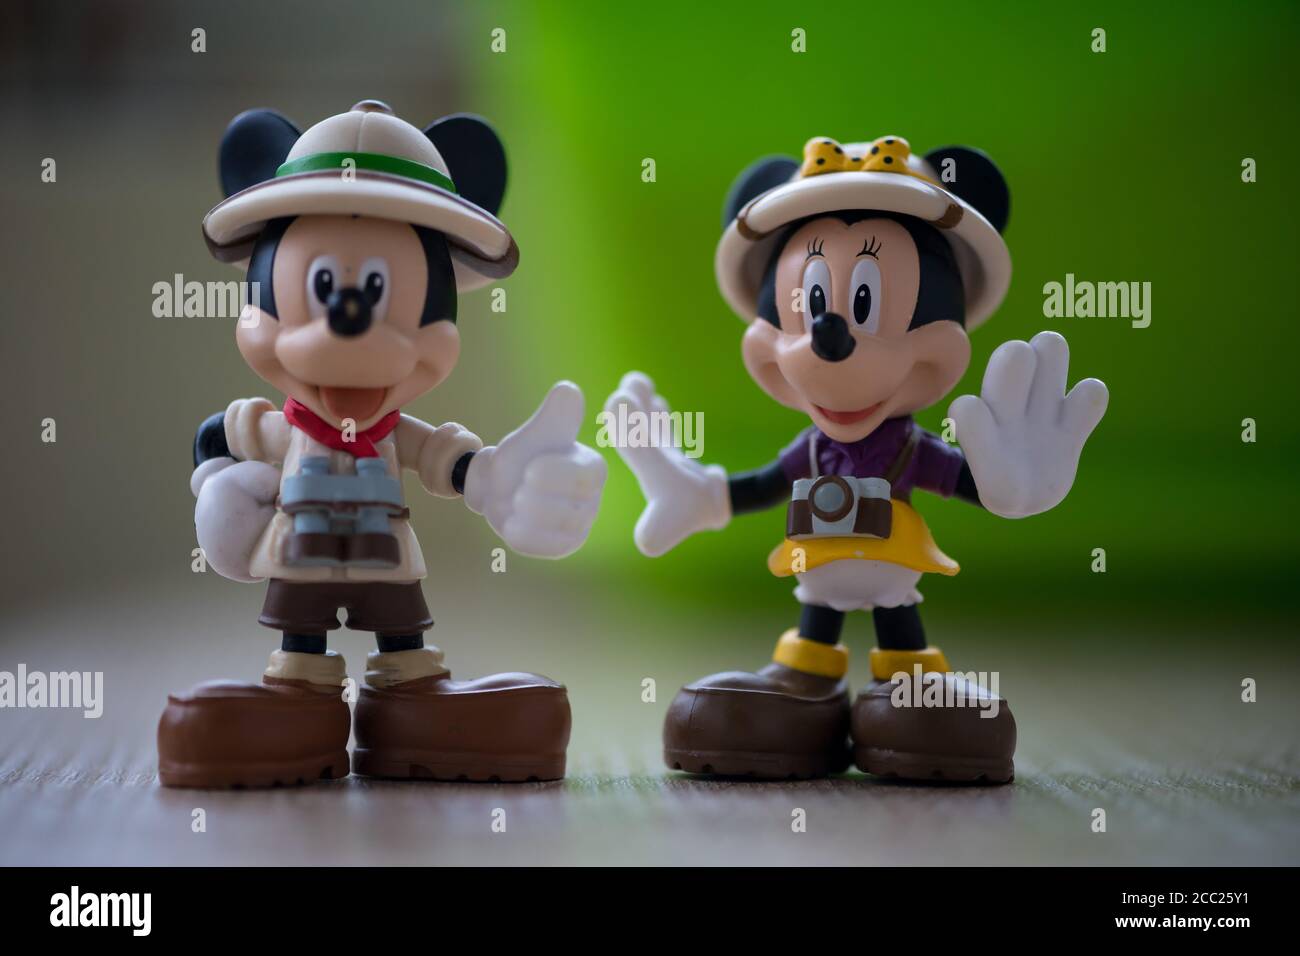 TIMISOARA, ROUMANIE - 19 JANVIER 2019 : gros plan des figurines Mickey Mouse et Minnie Mouse sur une table en bois. Mise au point sélective. Banque D'Images